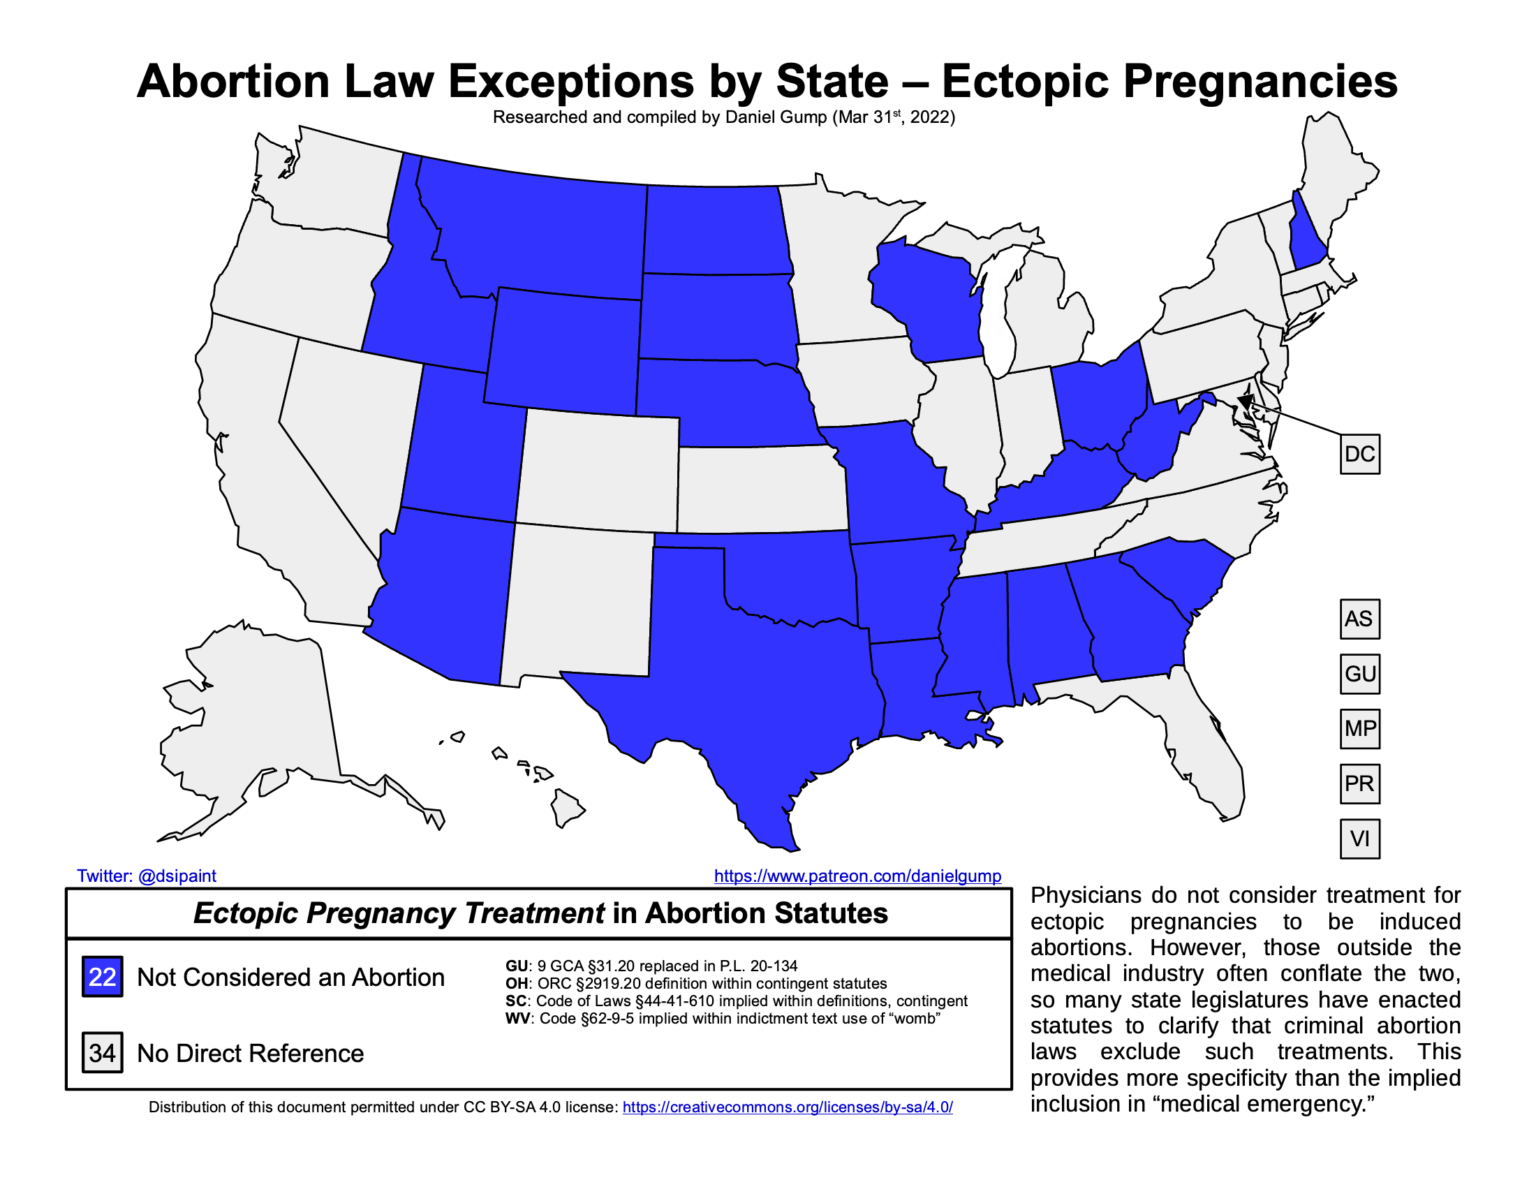 Außnahmen für Eileiterschwangerschaften nach Bundesstaat